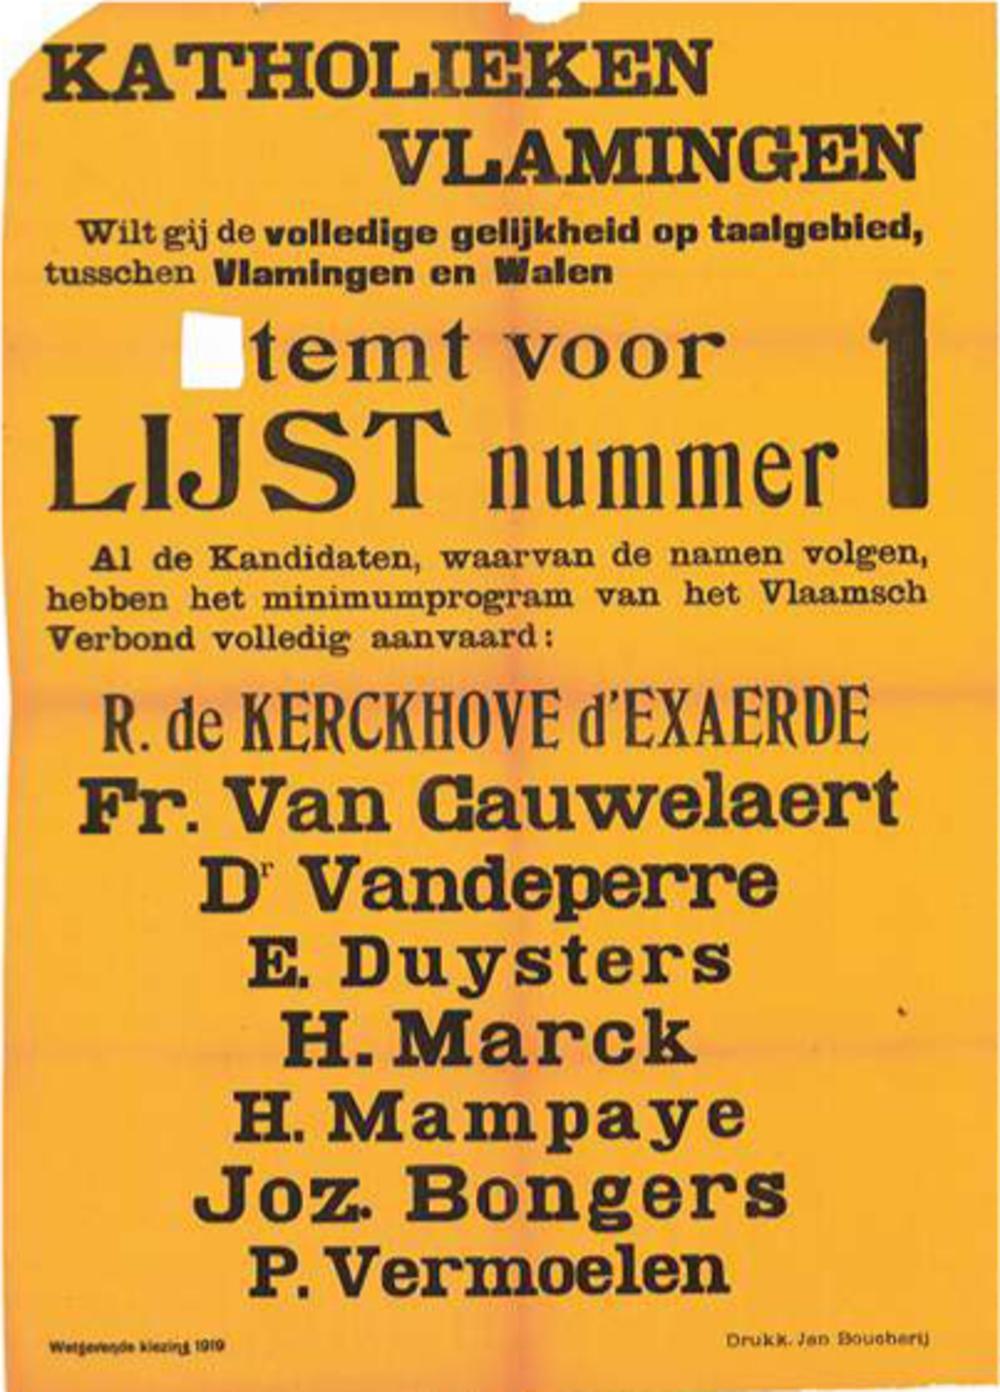 Al tijdens de eerste parlementsverkiezingen na de oorlog (1919) werpen sommige afdelingen van de katholieke partij het Minimumprogramma van Frans Van Cauwelaert in de strijd: 'de volledige gelijkheid op taalgebied tussen Vlamingen en Walen'.